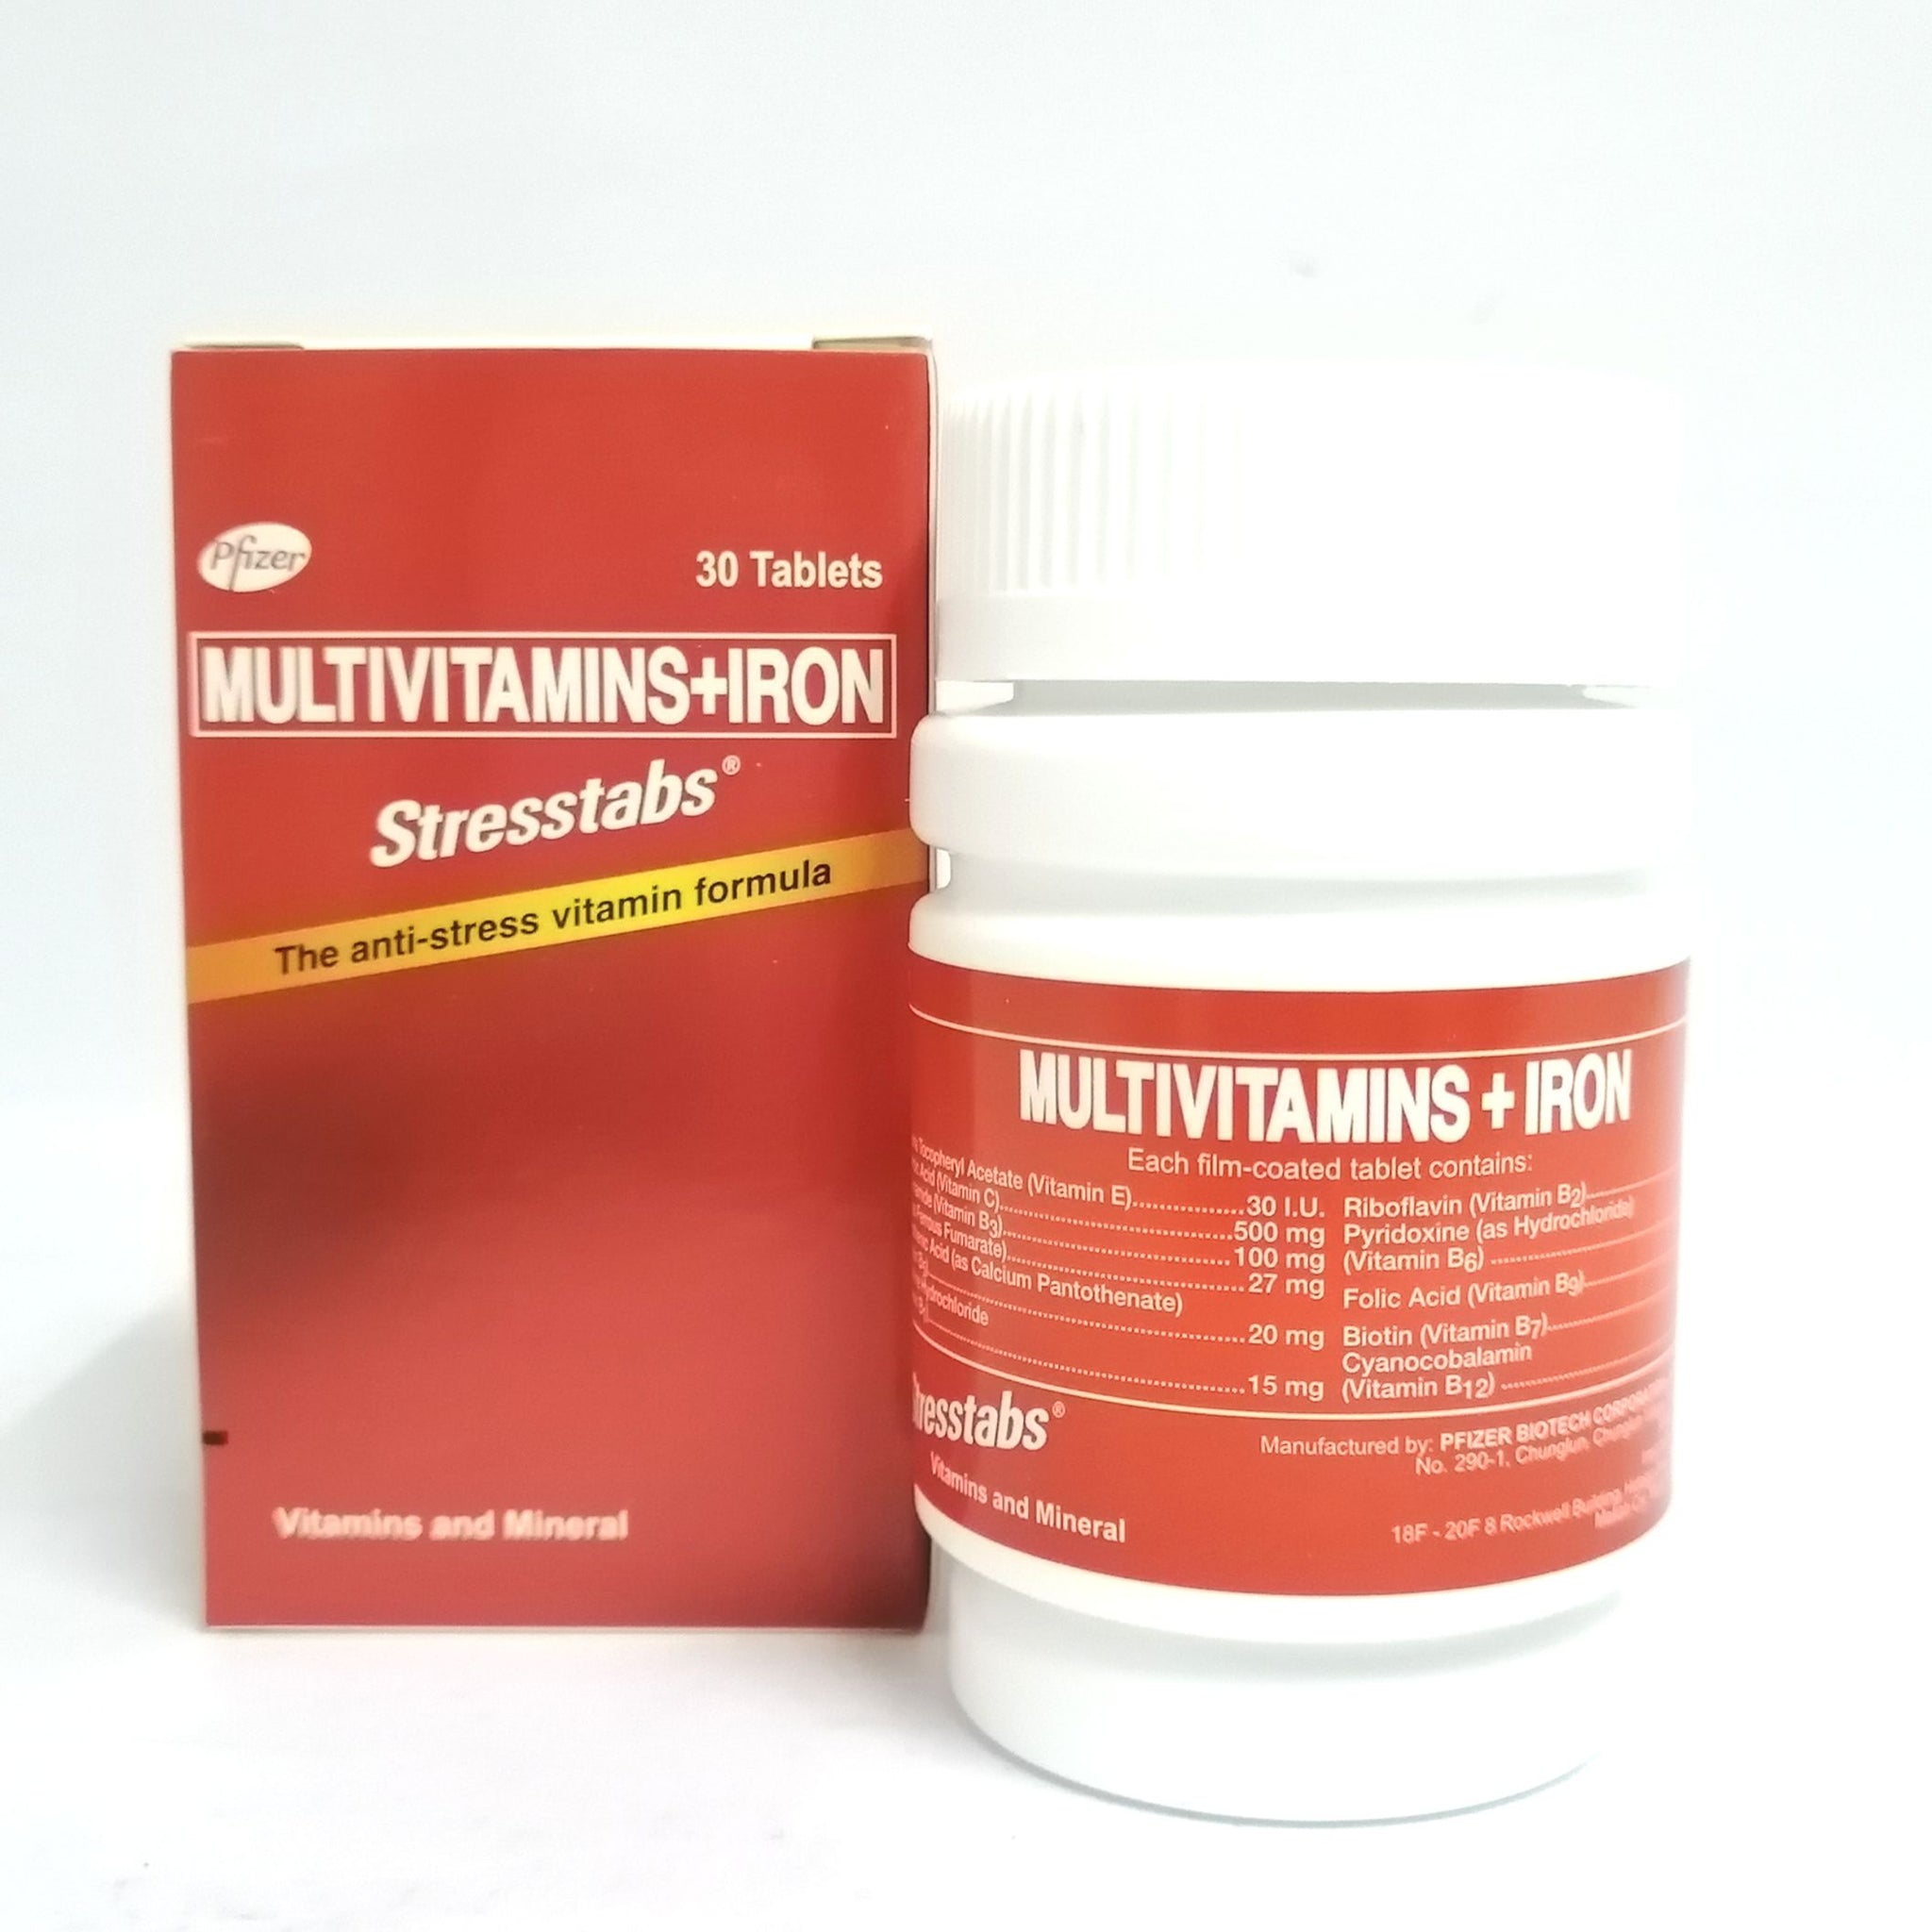 STRESSTABS - Multivitamins + Iron - Anti Stress Vitamin Formula 30 Tables